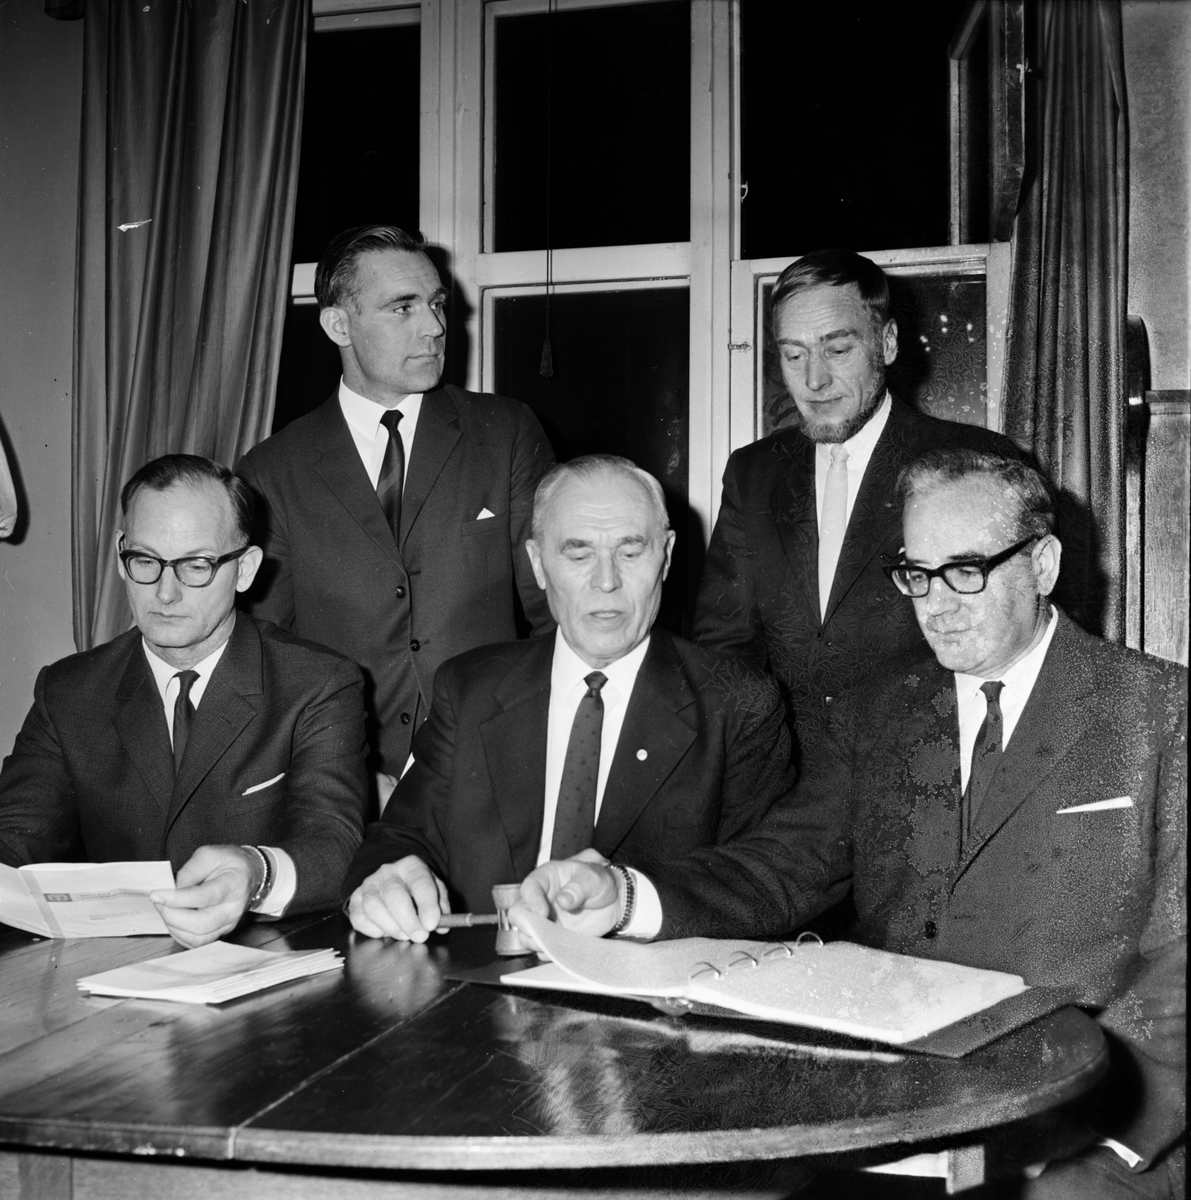 RLF-avdelning i Bollnäs och jordbrukskassans årsmöte.
4/3-1967